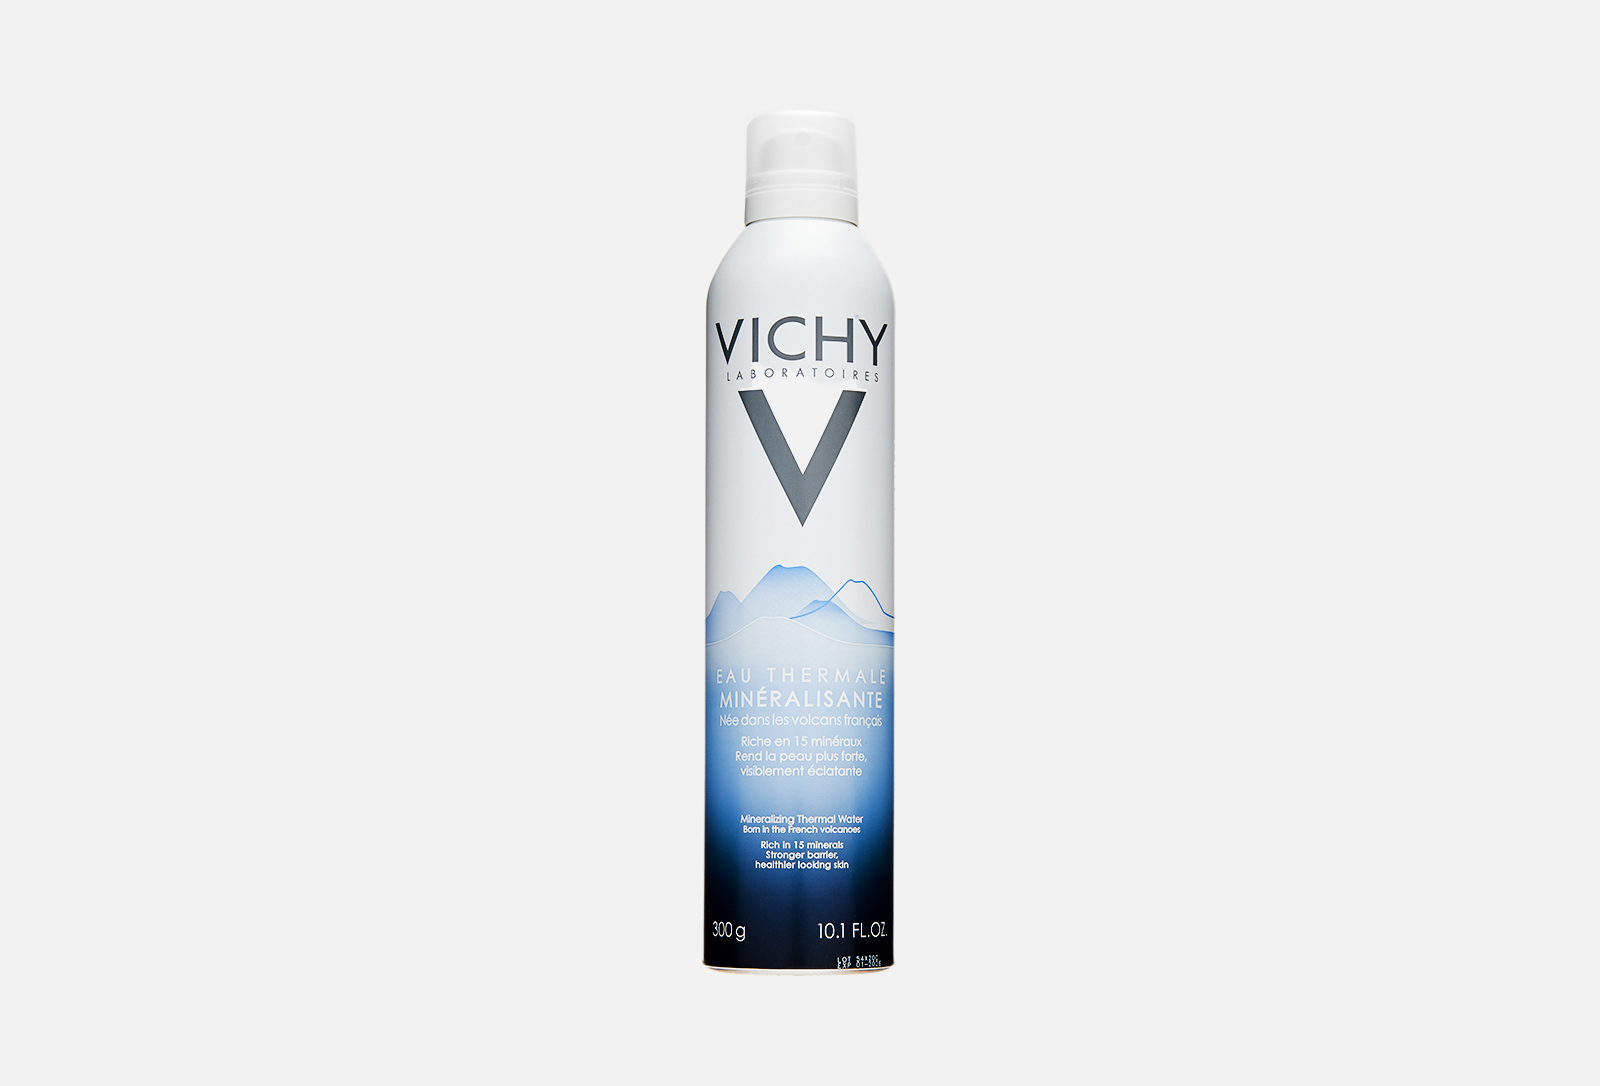 Термальная вода vichy. Виши (Vichy) вода термальная 300 мл. Vichy минерализирующая термальная вода, 300 мл. Vichy минерализирующая термальная вода 50 мл. Виши (Vichy) вода термальная 50 мл.